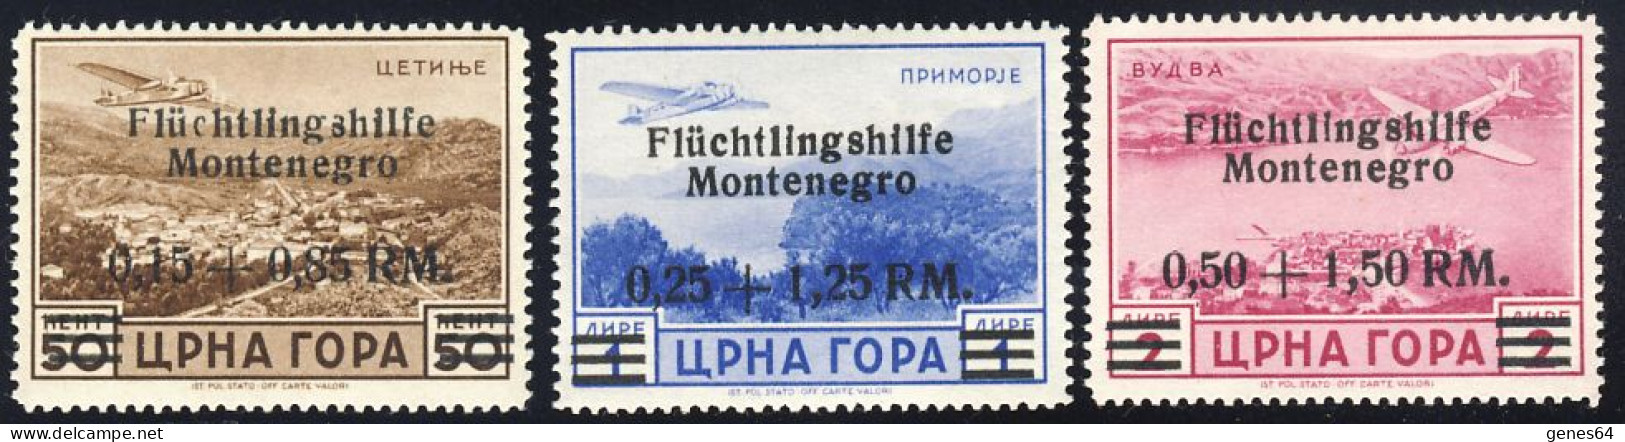 1943 - Emissione Di Cettigne  - Posta Aerea Serie Completa -  Nuovi Linguellati Mlh (2 Immagini) - Occup. Tedesca: Montenegro